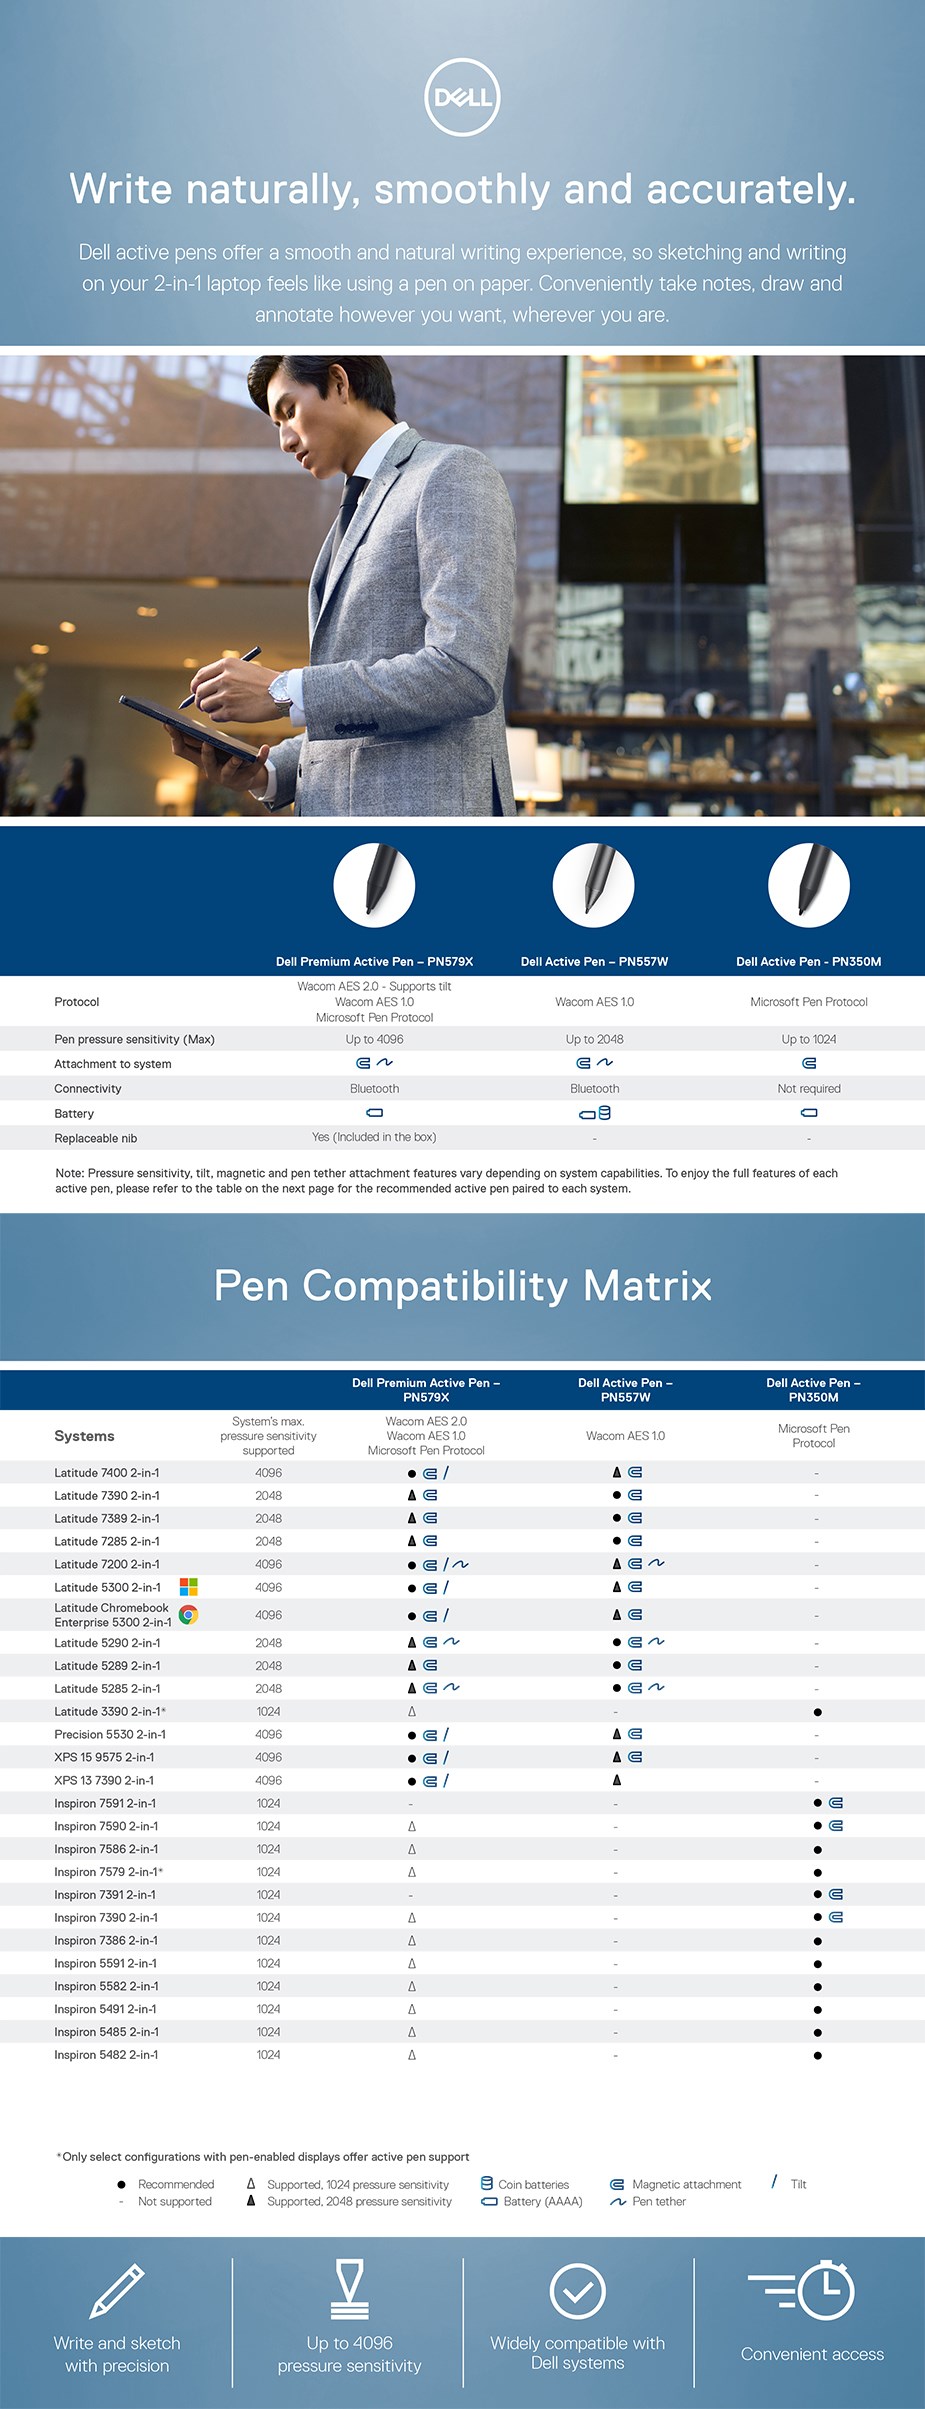 Dell Premium Active Pen - PN579X - Overview 1